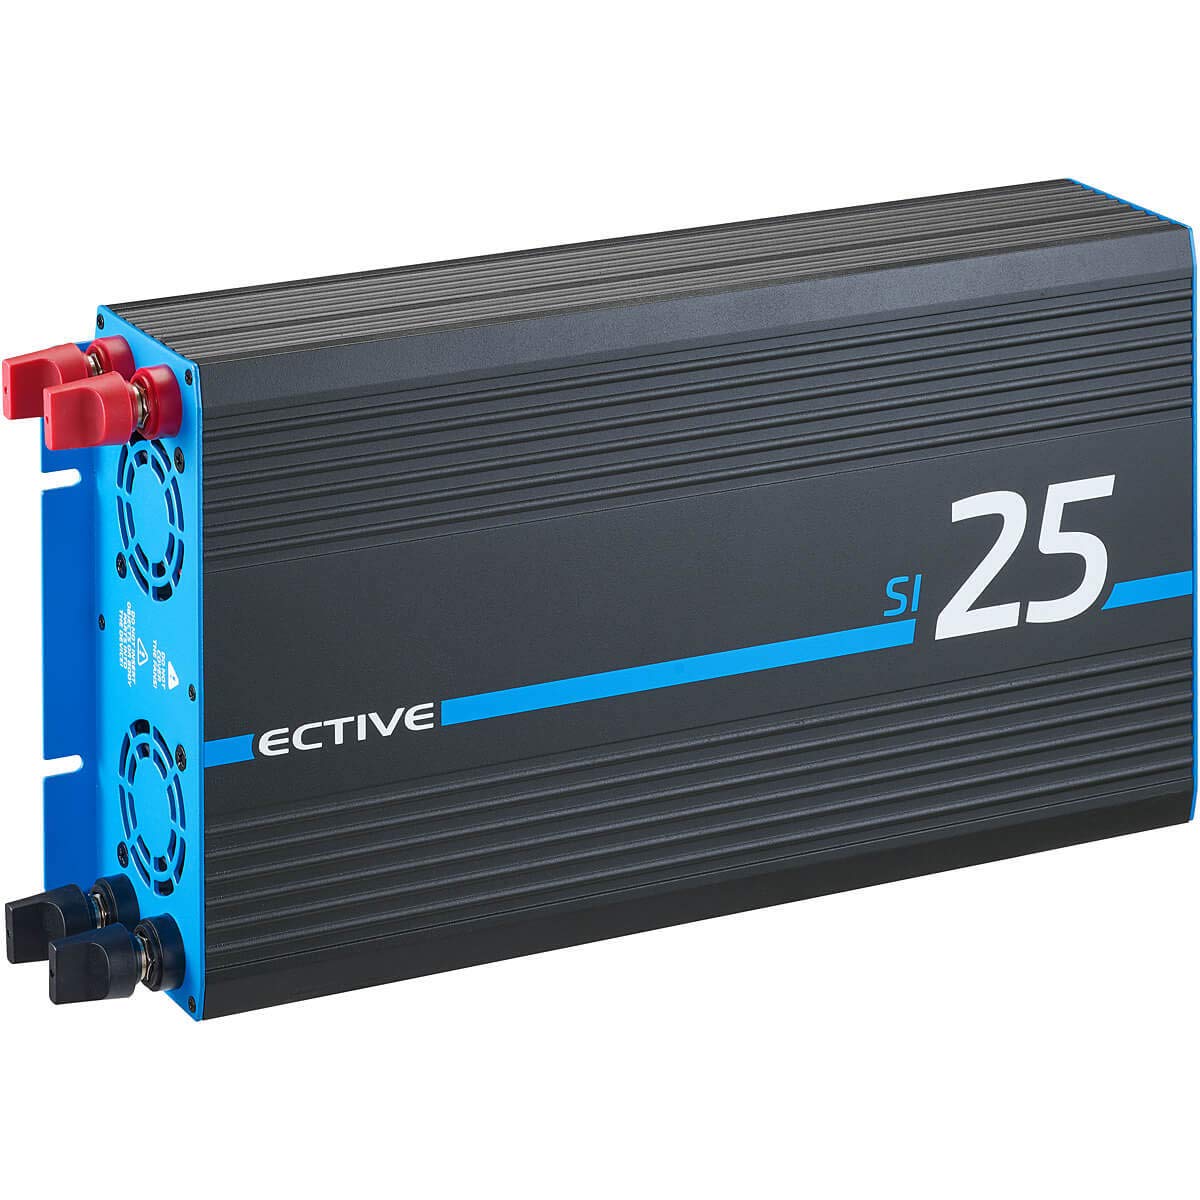 ECTIVE Reiner Sinsus Wechselrichter SI25-2500W, 12V auf 230V, USB, Überlastschutz, Überhitzungsschutz, Aluminiumgehäuse - DC/AC Spannungswandler, Umwandler, Stromwandler für Haushaltsgeräten von ECTIVE